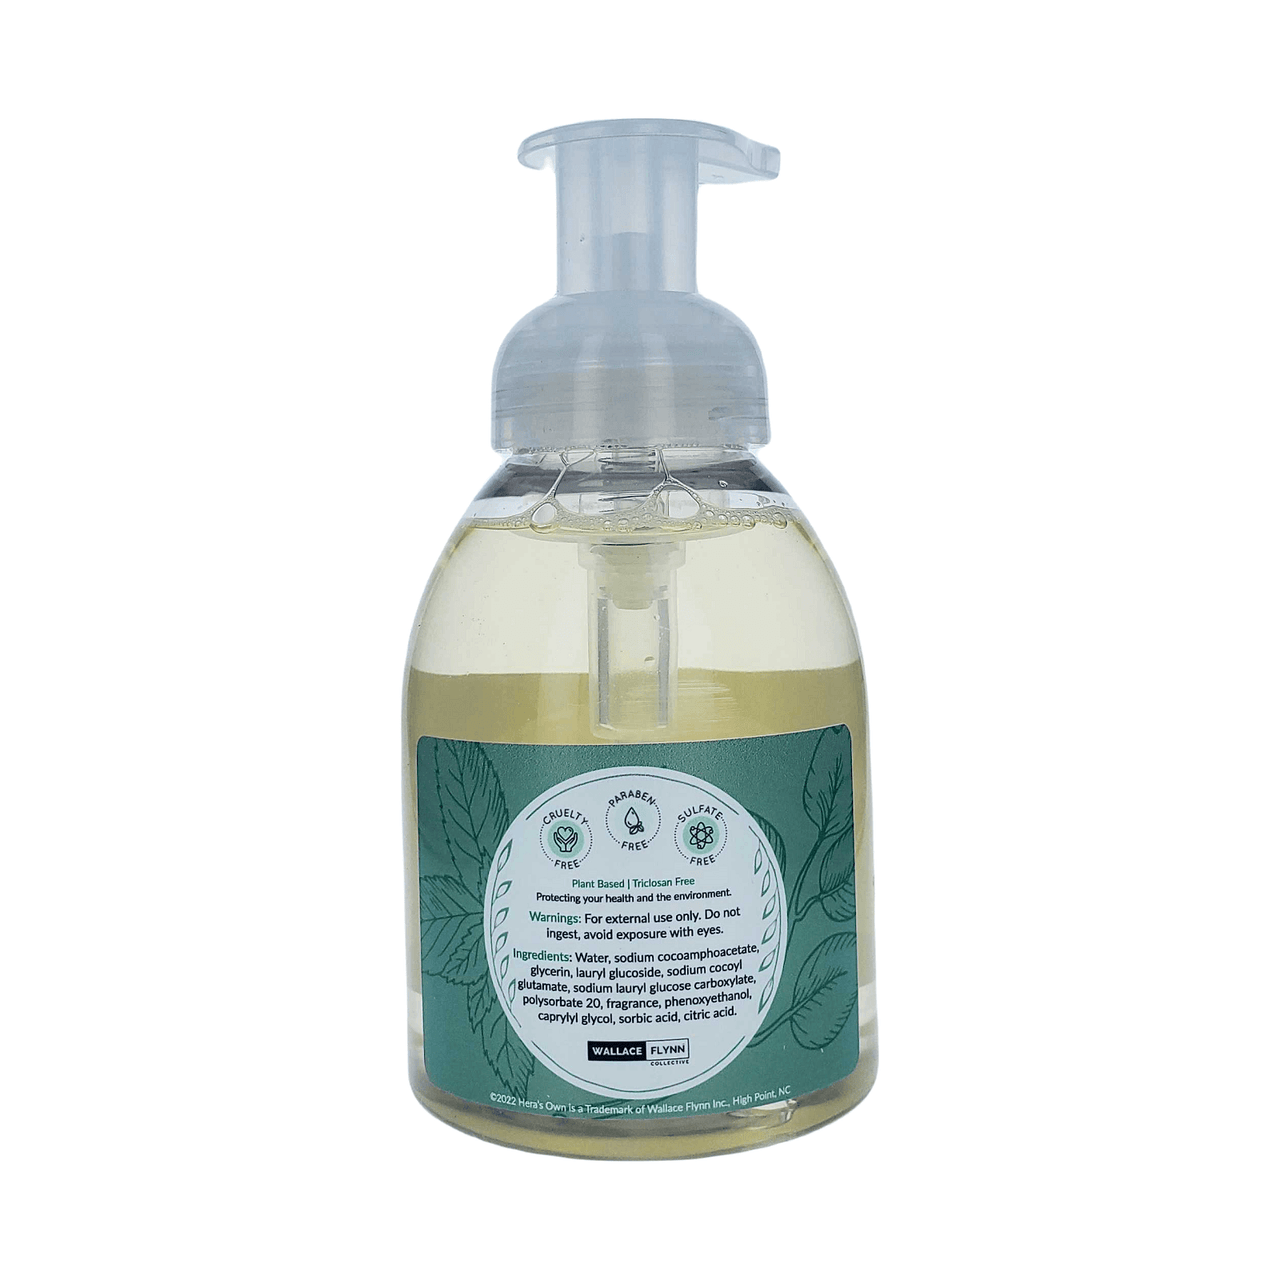 Hera's Own Foaming Hand Soap - Eucalyptus Mint - 10 fl oz. (300 ml)